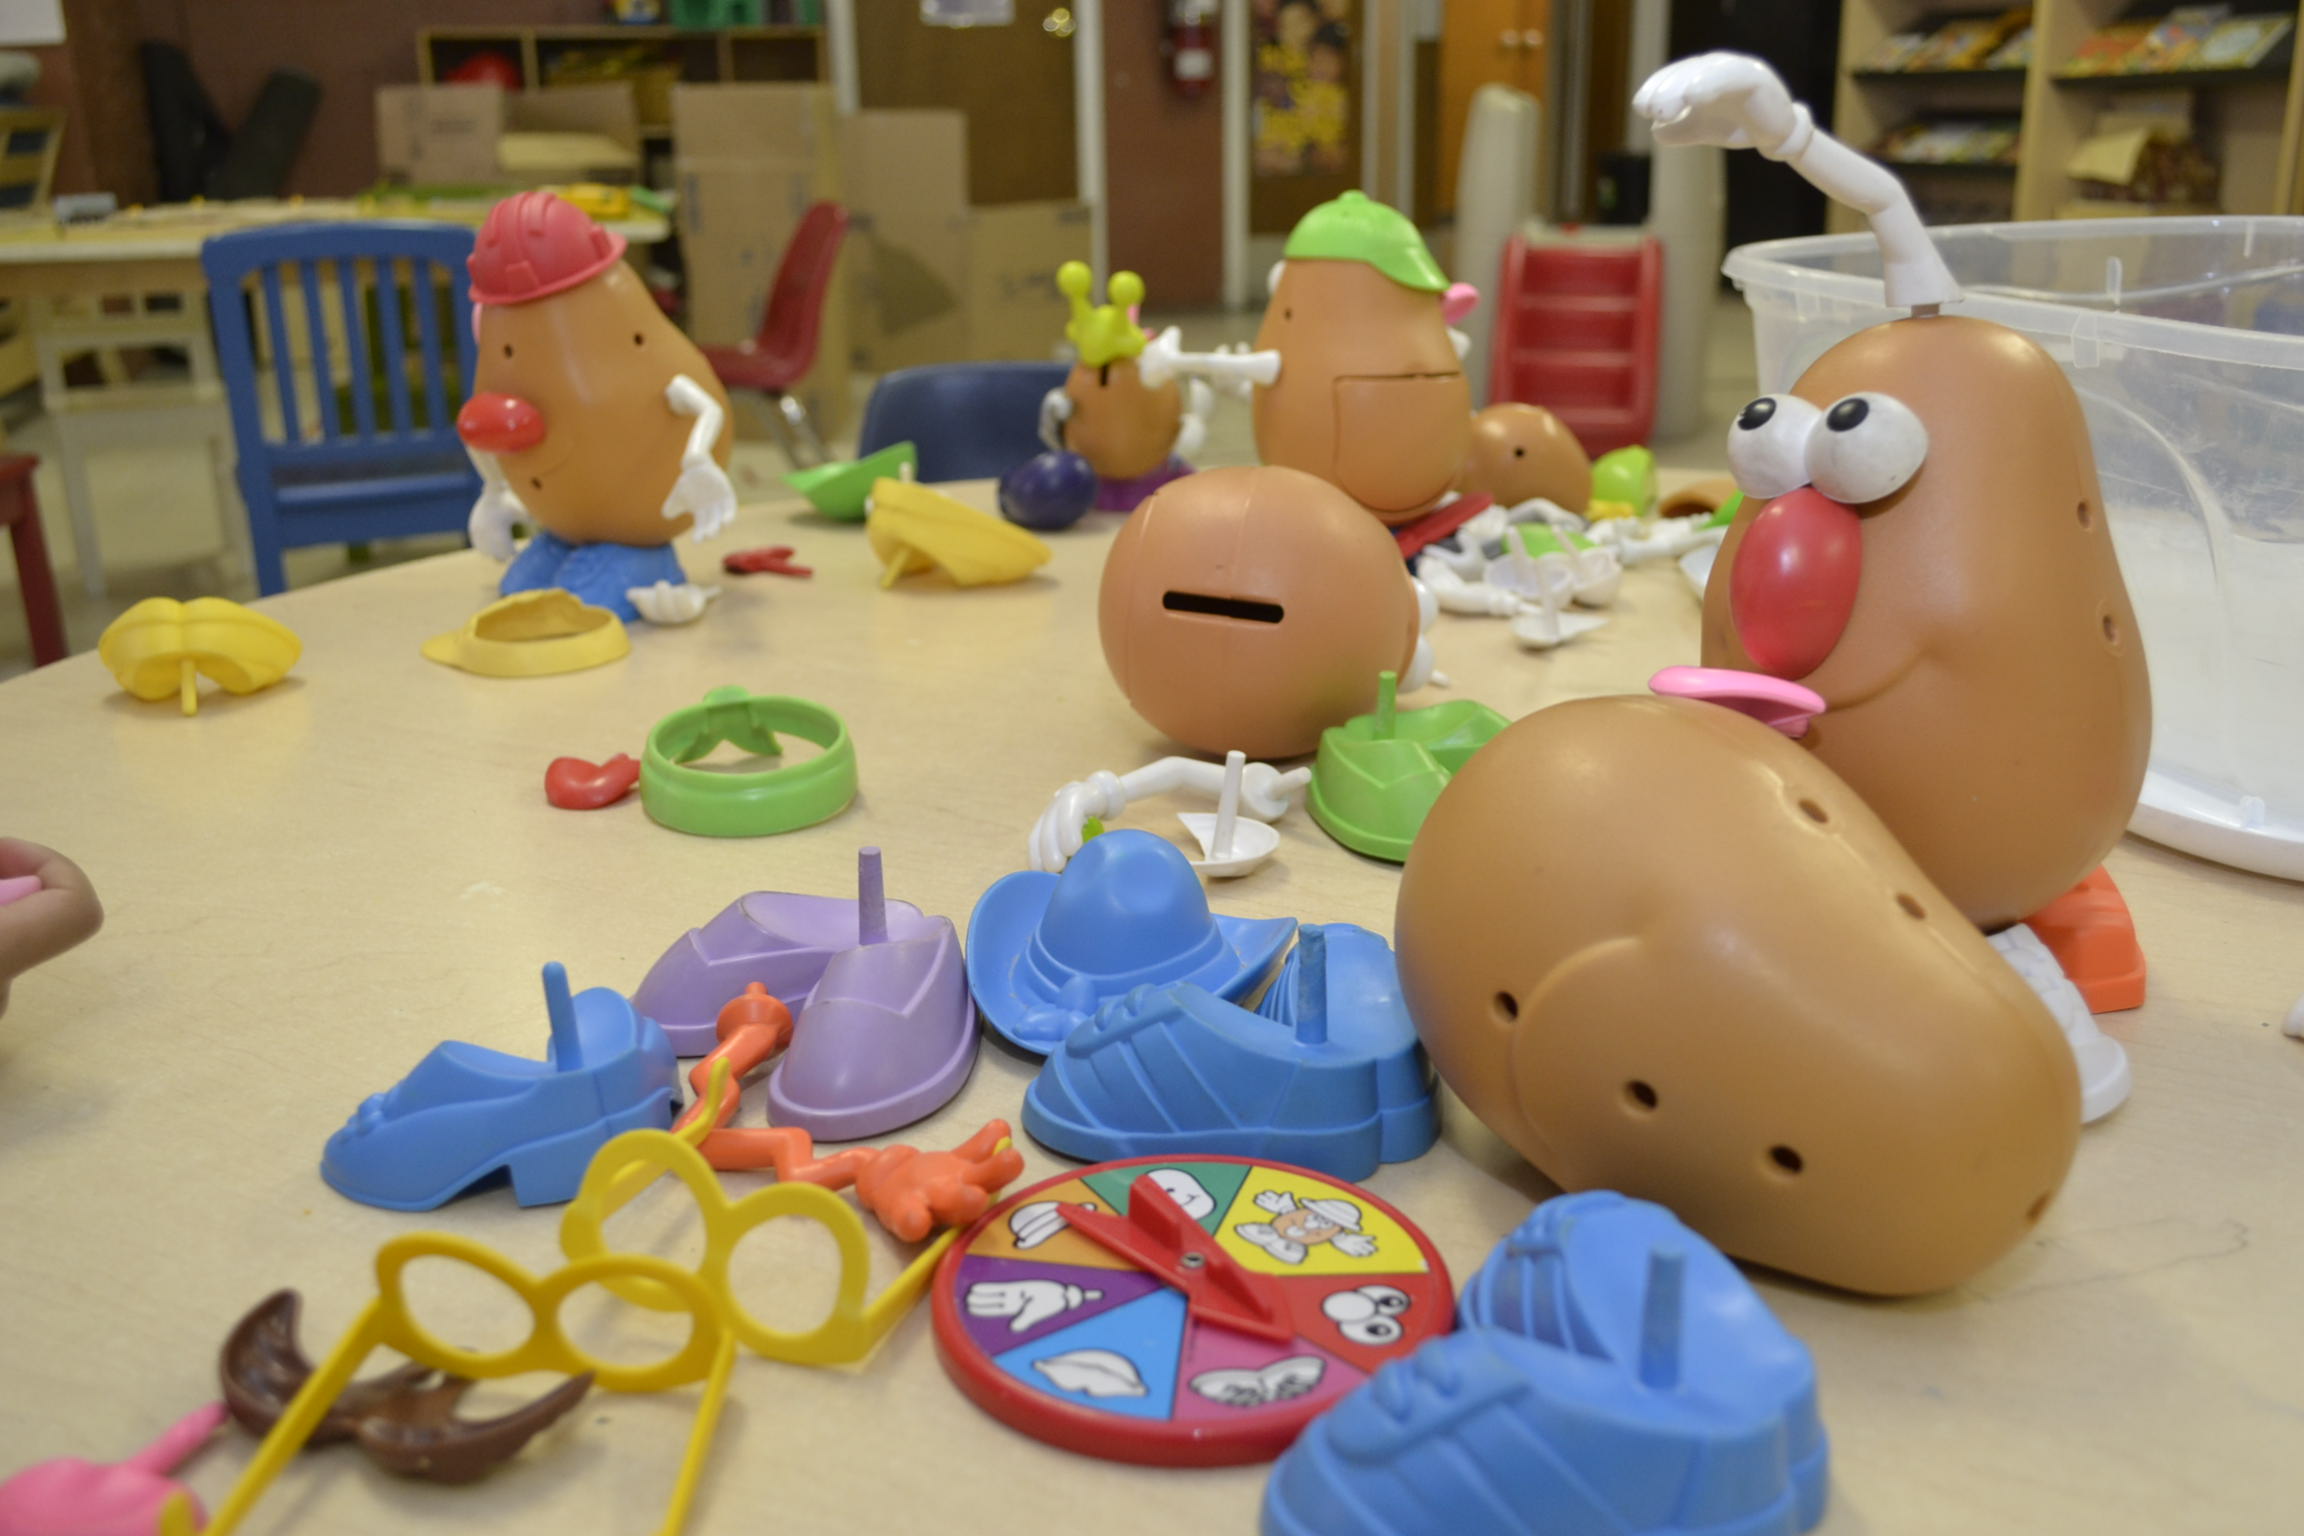  Divers jouets Monsieur Patate pour enfants sont éparpillés sur une table dans un centre de garde d’enfants.